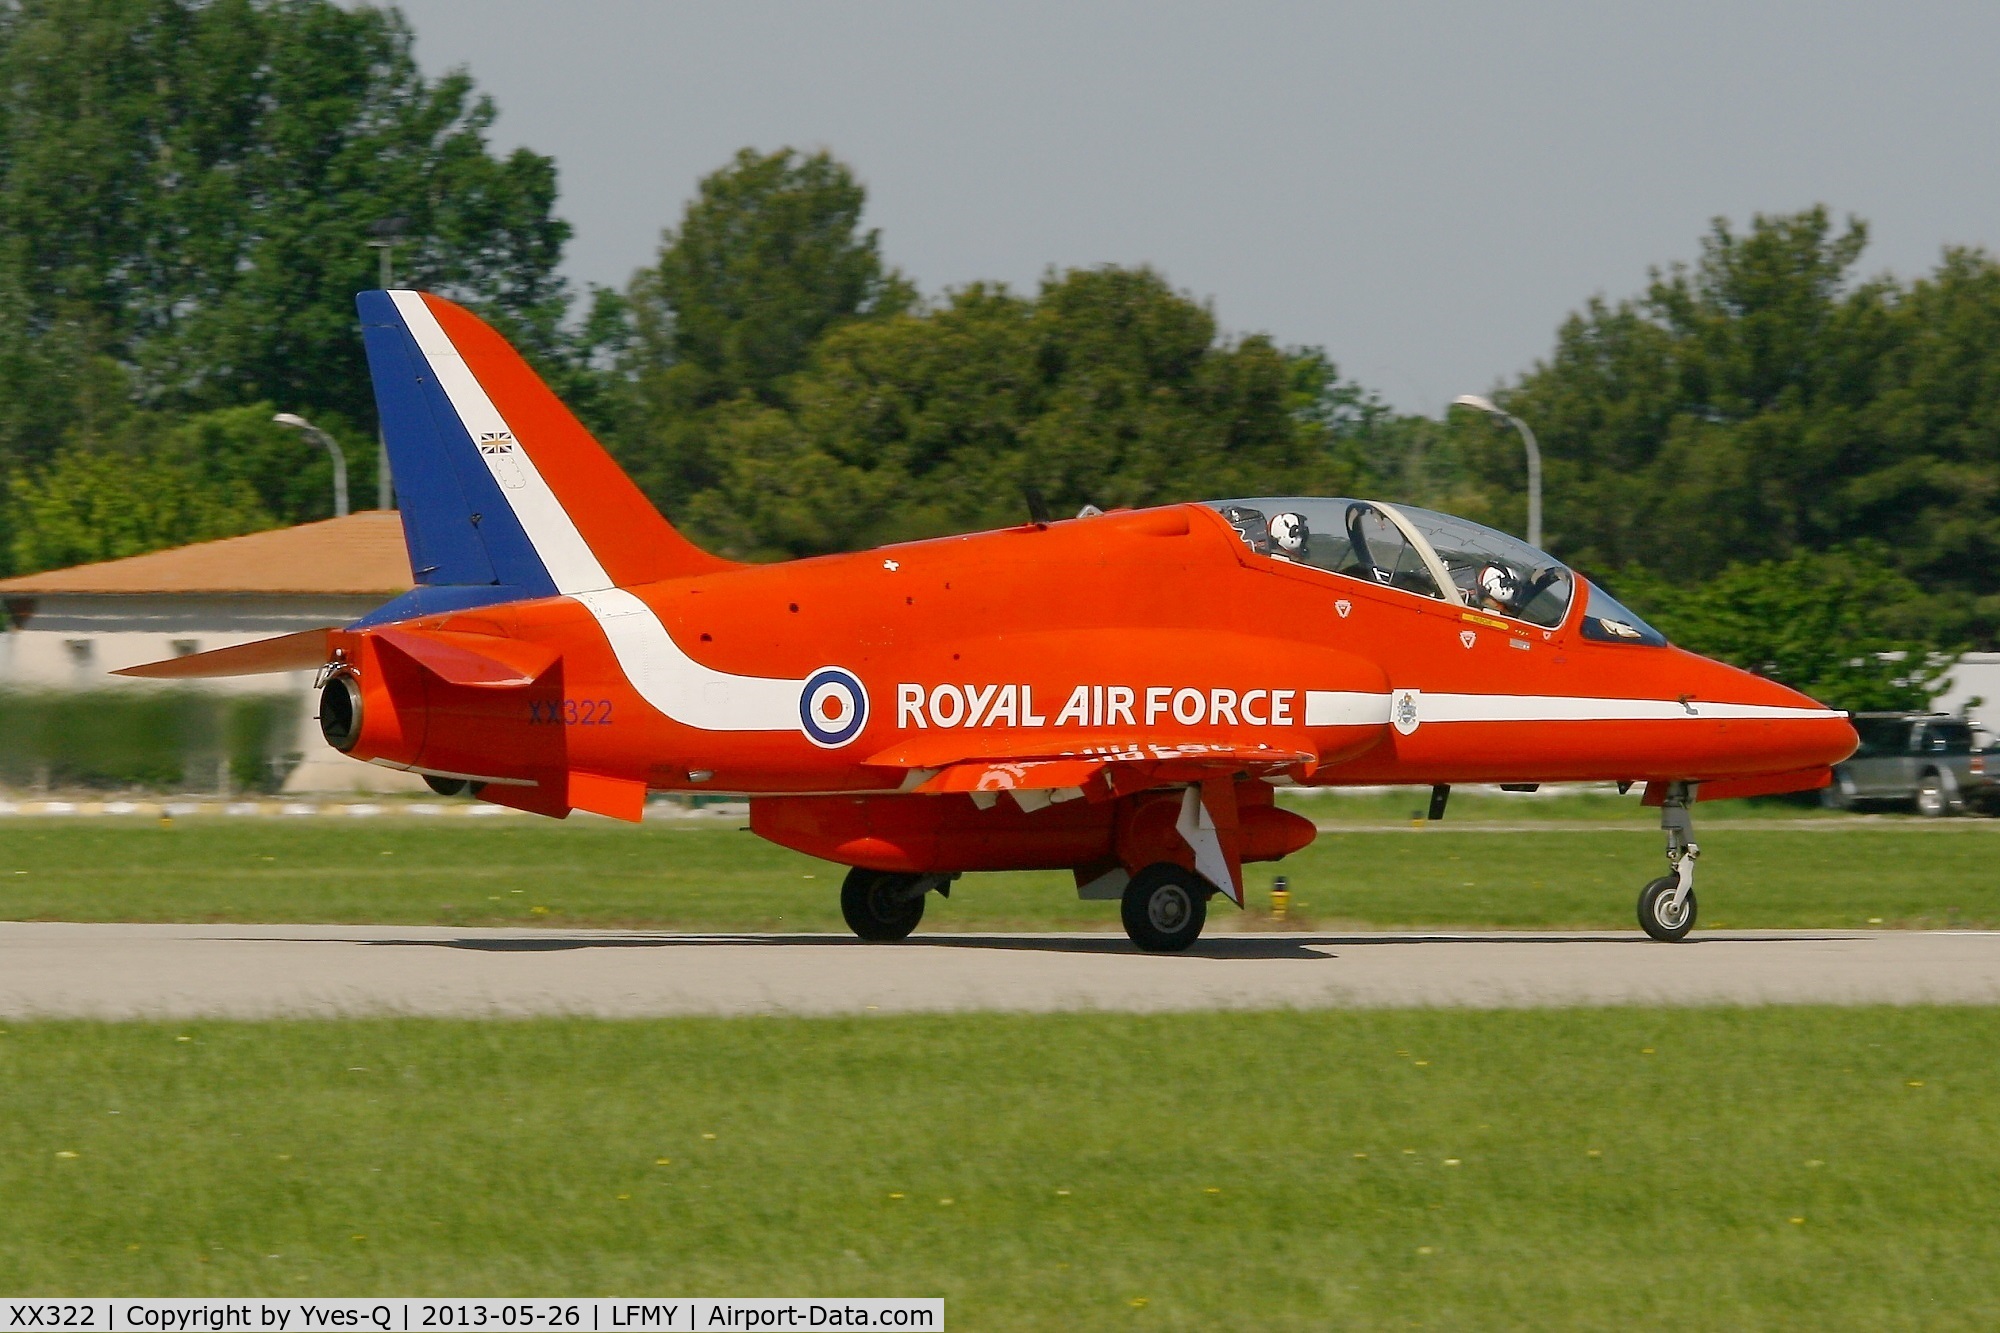 XX322, 1980 Hawker Siddeley Hawk T.1A C/N 165/312147, Hawker Siddeley Hawk T.1A, Red Arrows, Salon De Provence Air Base 701 (LFMY)